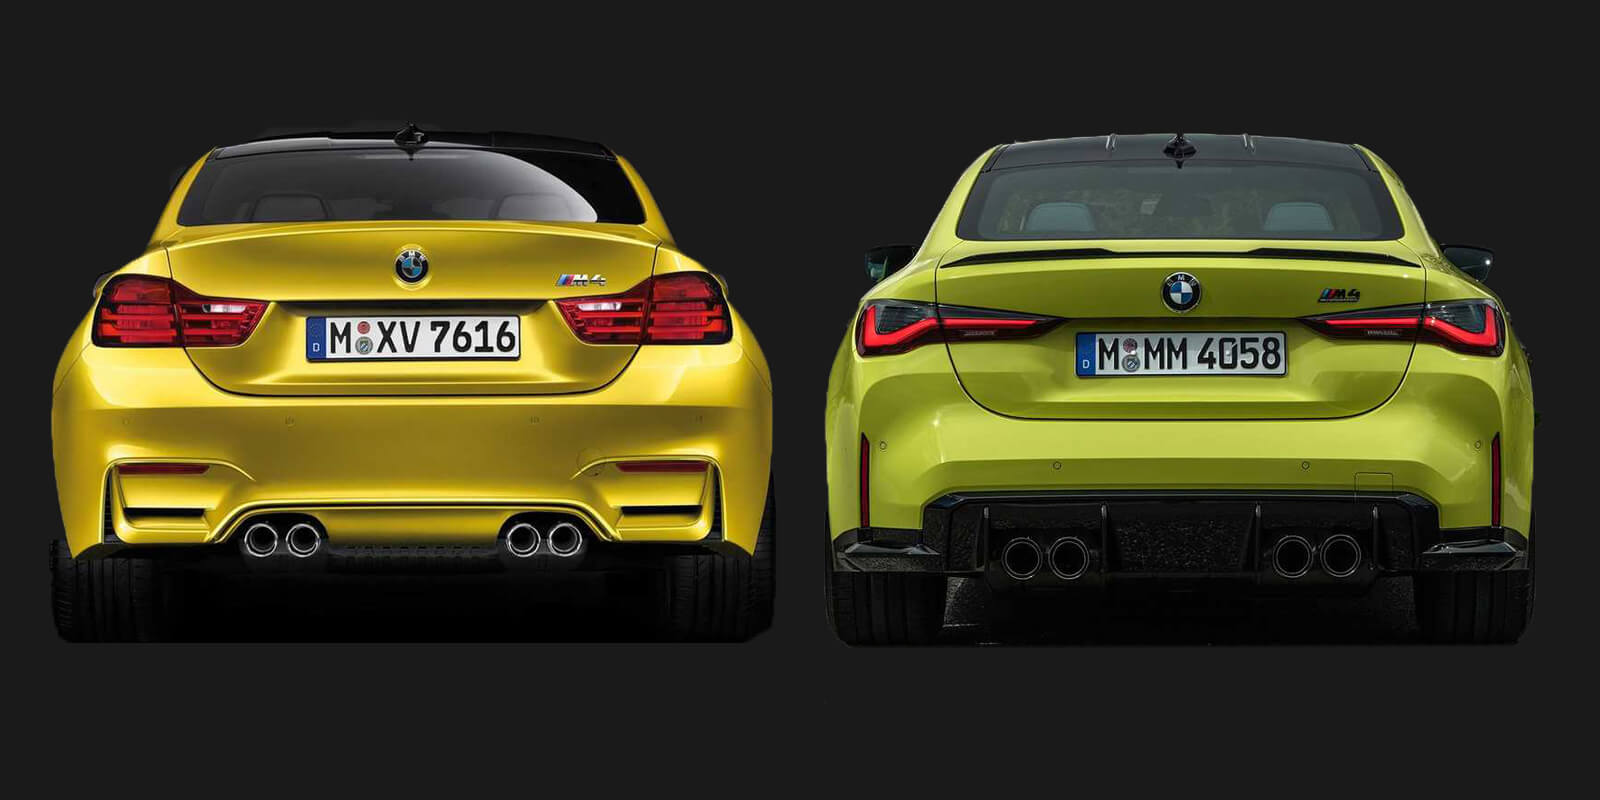 Naredili smo podrobno primerjavo obeh generacij BMW M4! Kaj nas je najbolj zmotilo?